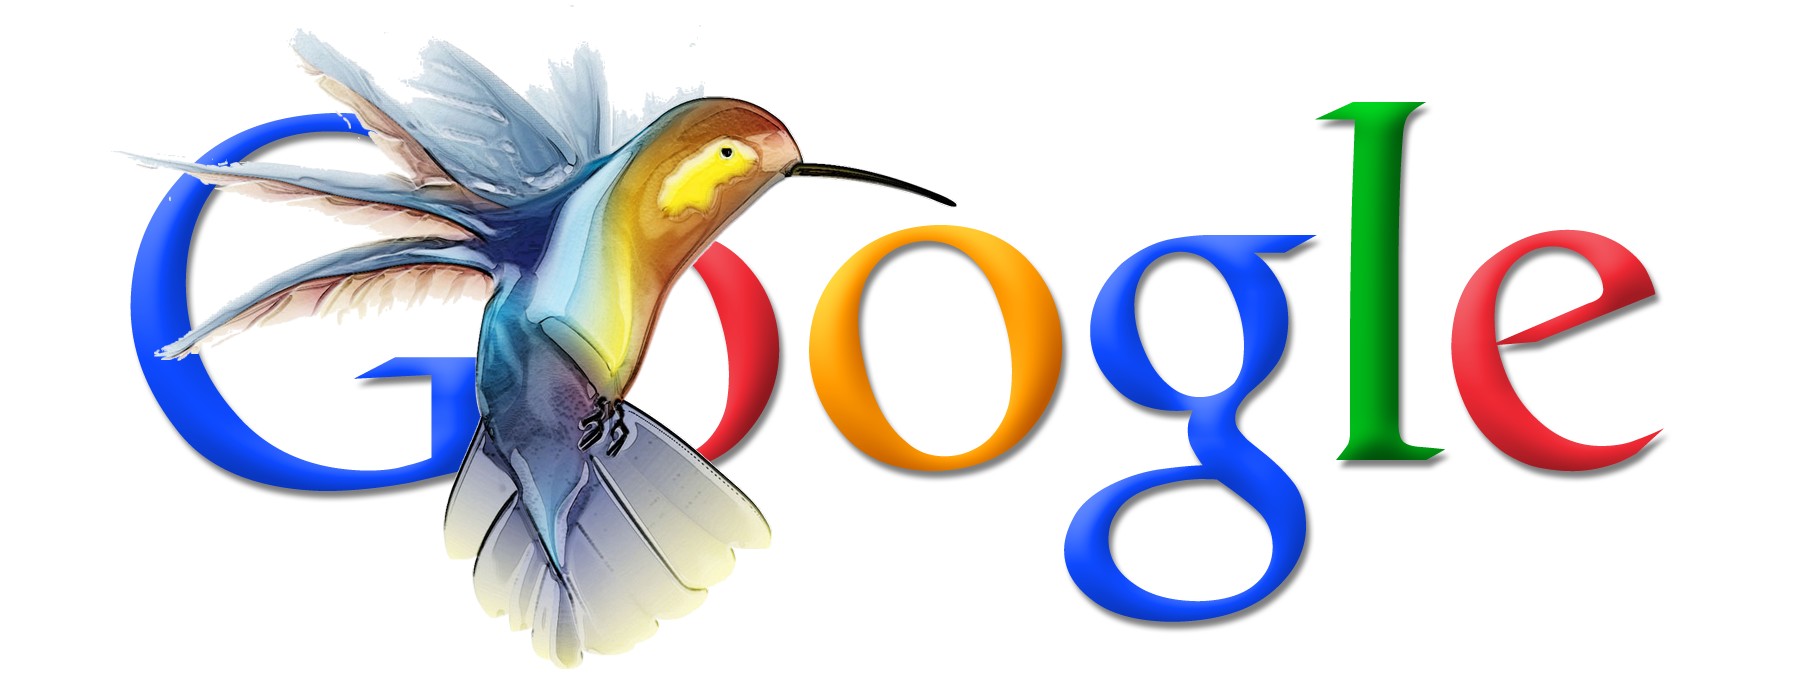 SEO - Google Colibri